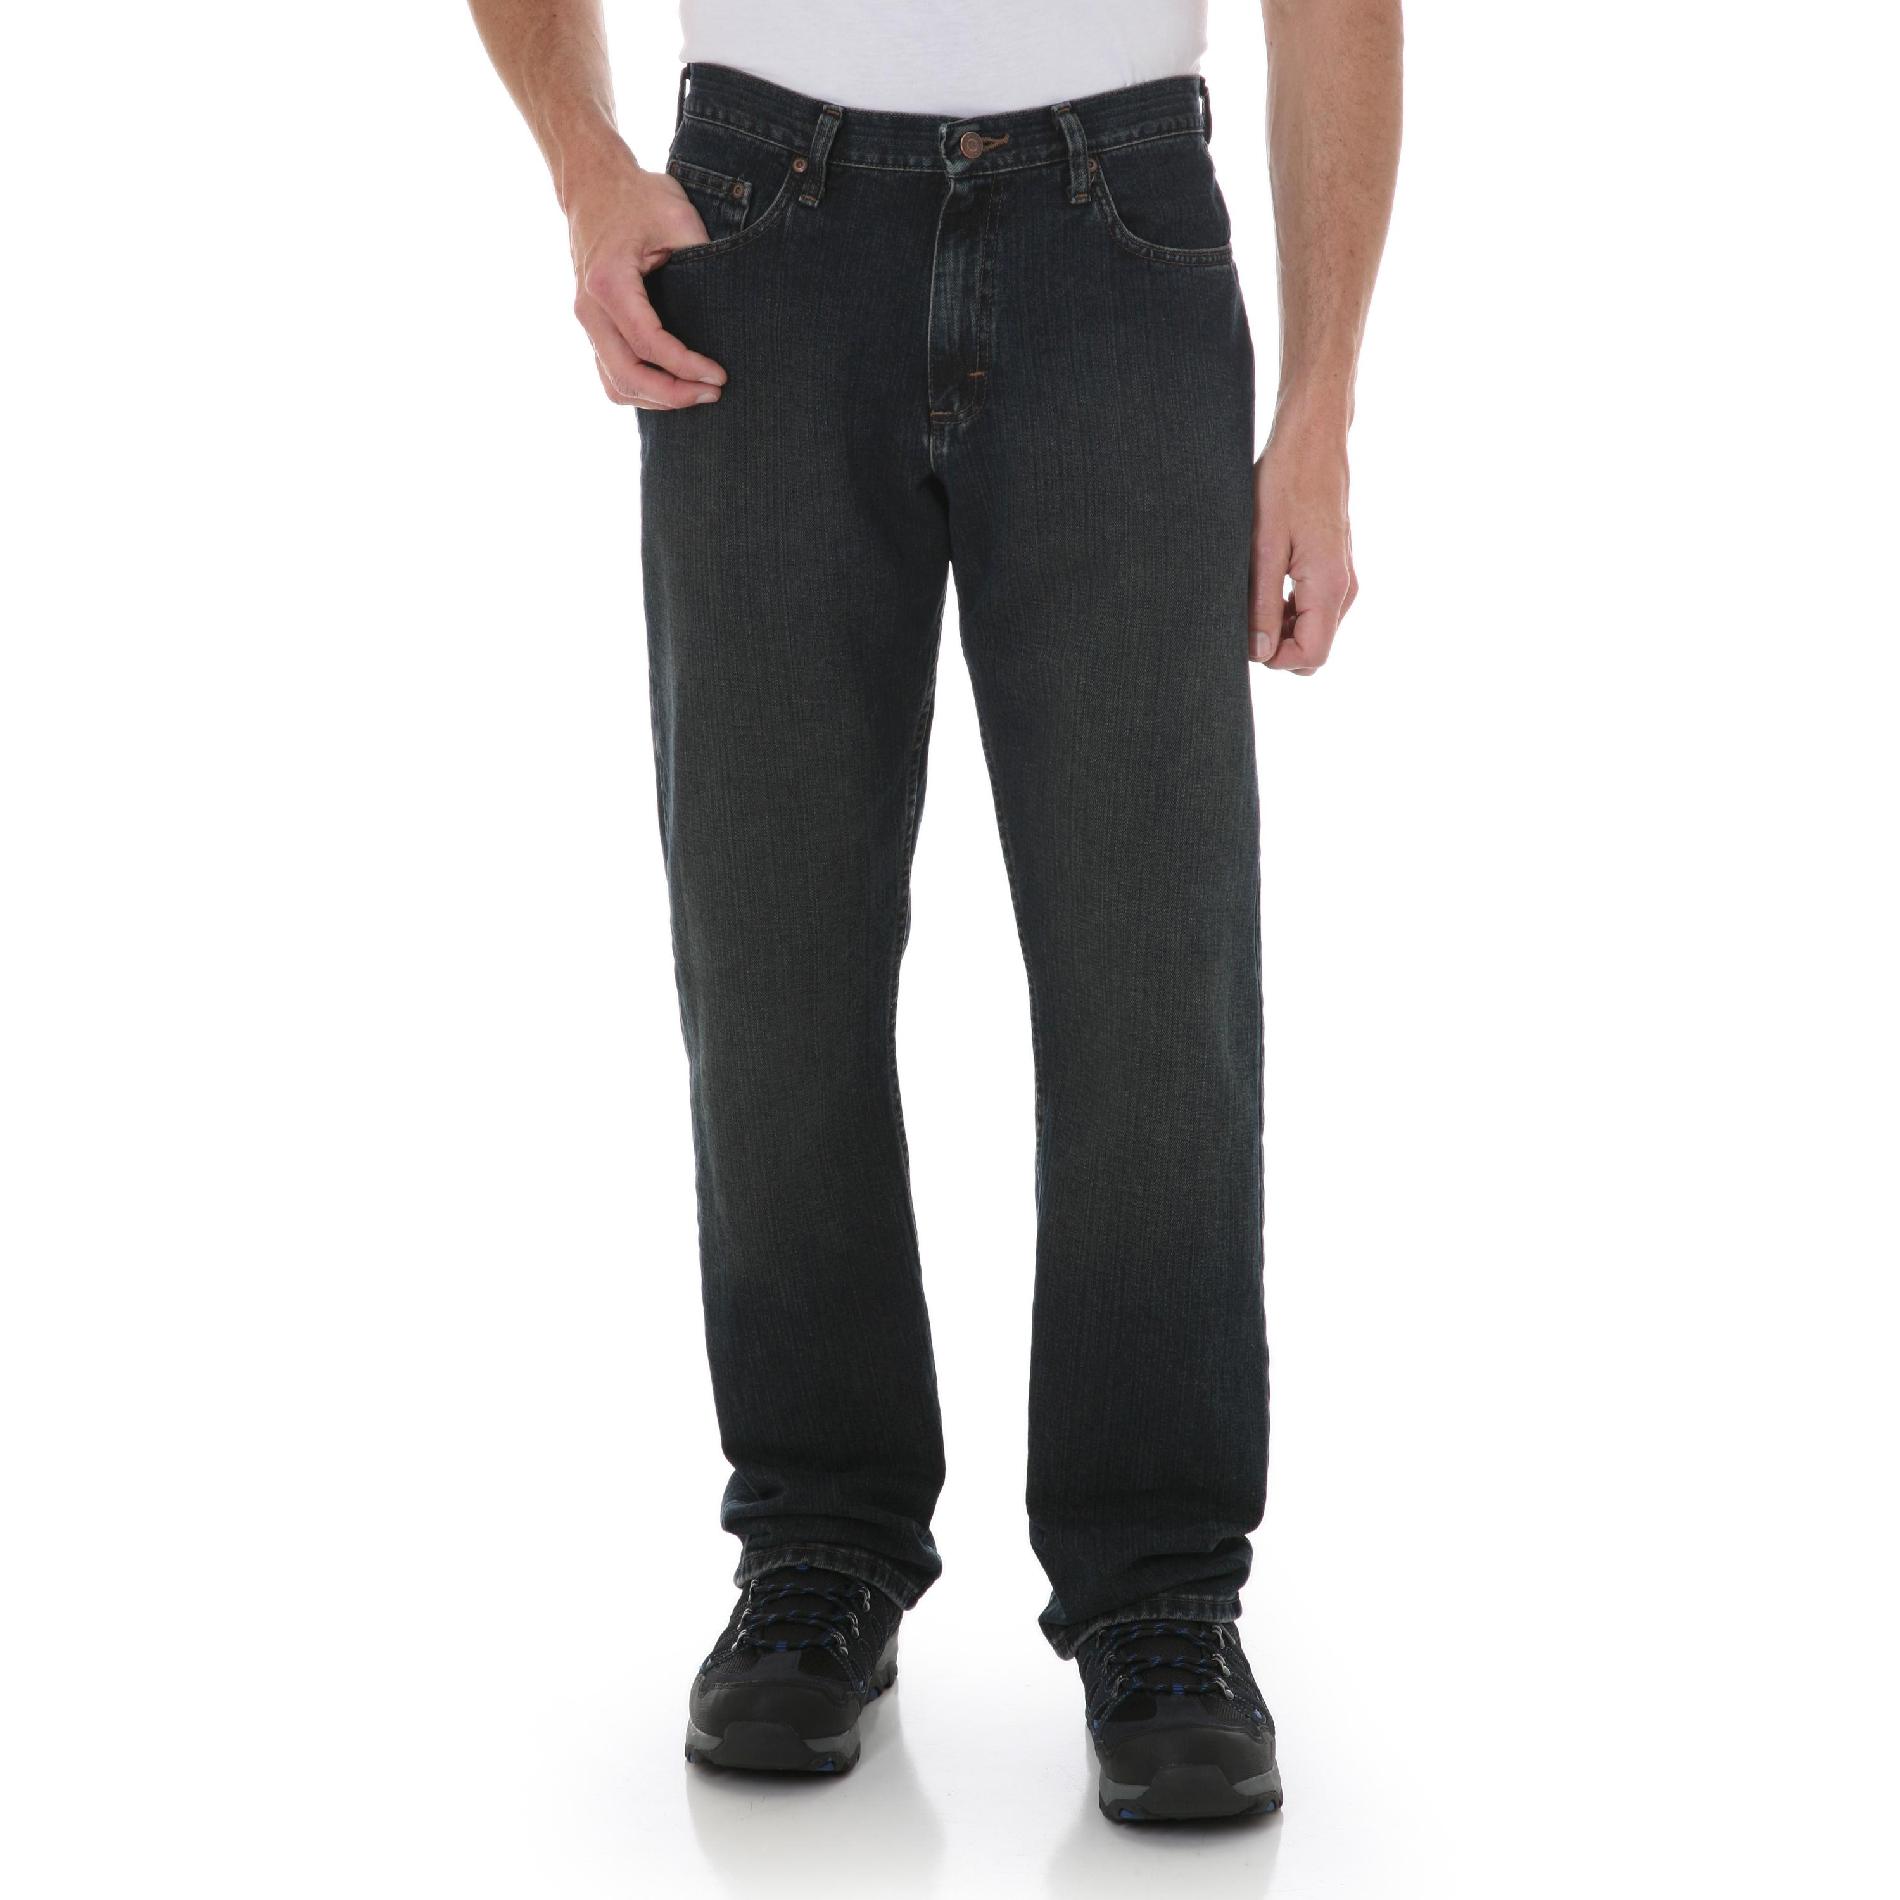 Wrangler Men's Five Star Premium Denim Jeans - Relaxed Fit